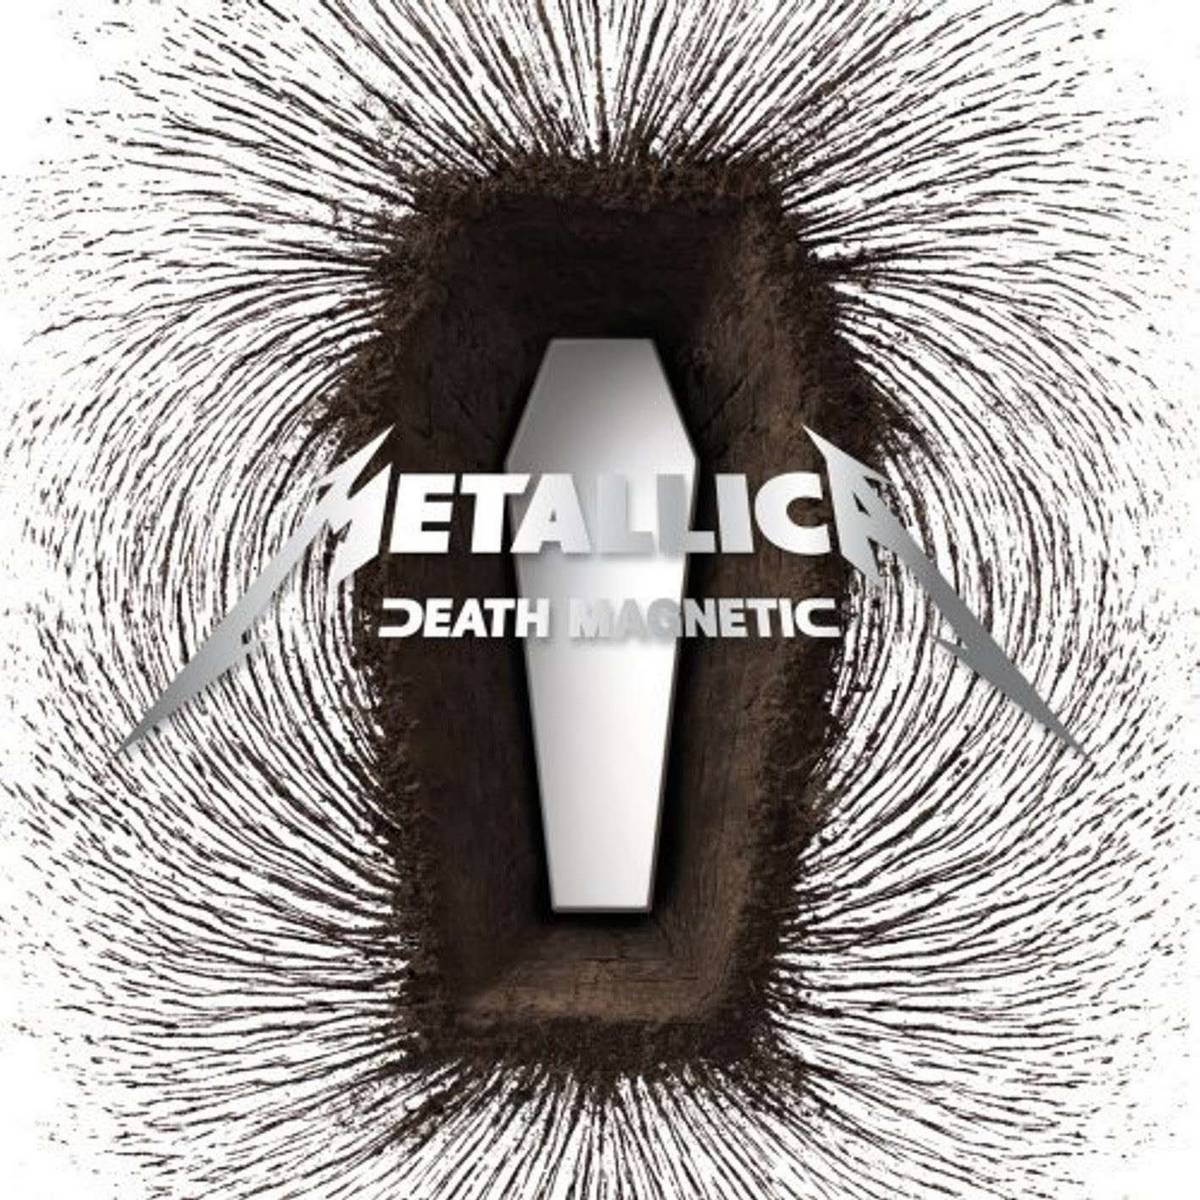 Metallica – Death Magnetic (2LP)